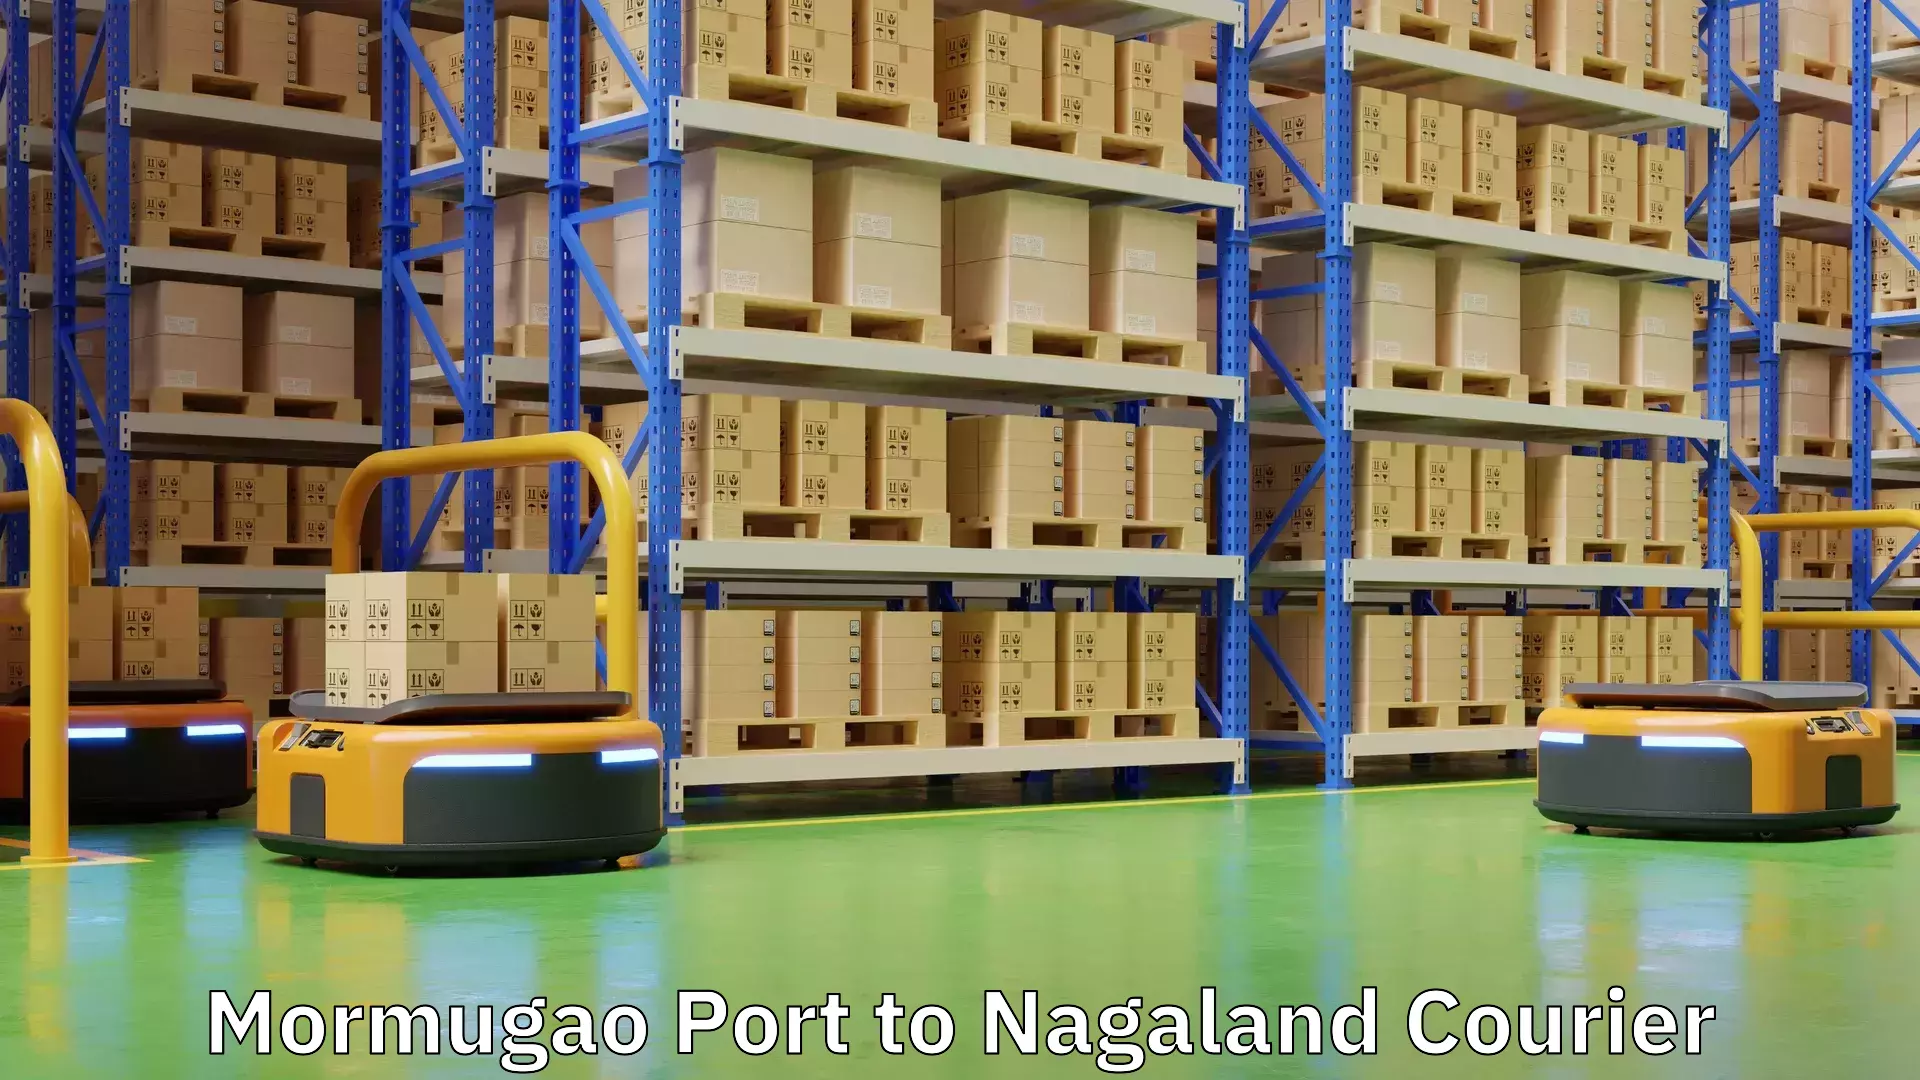 Courier dispatch services Mormugao Port to Nagaland